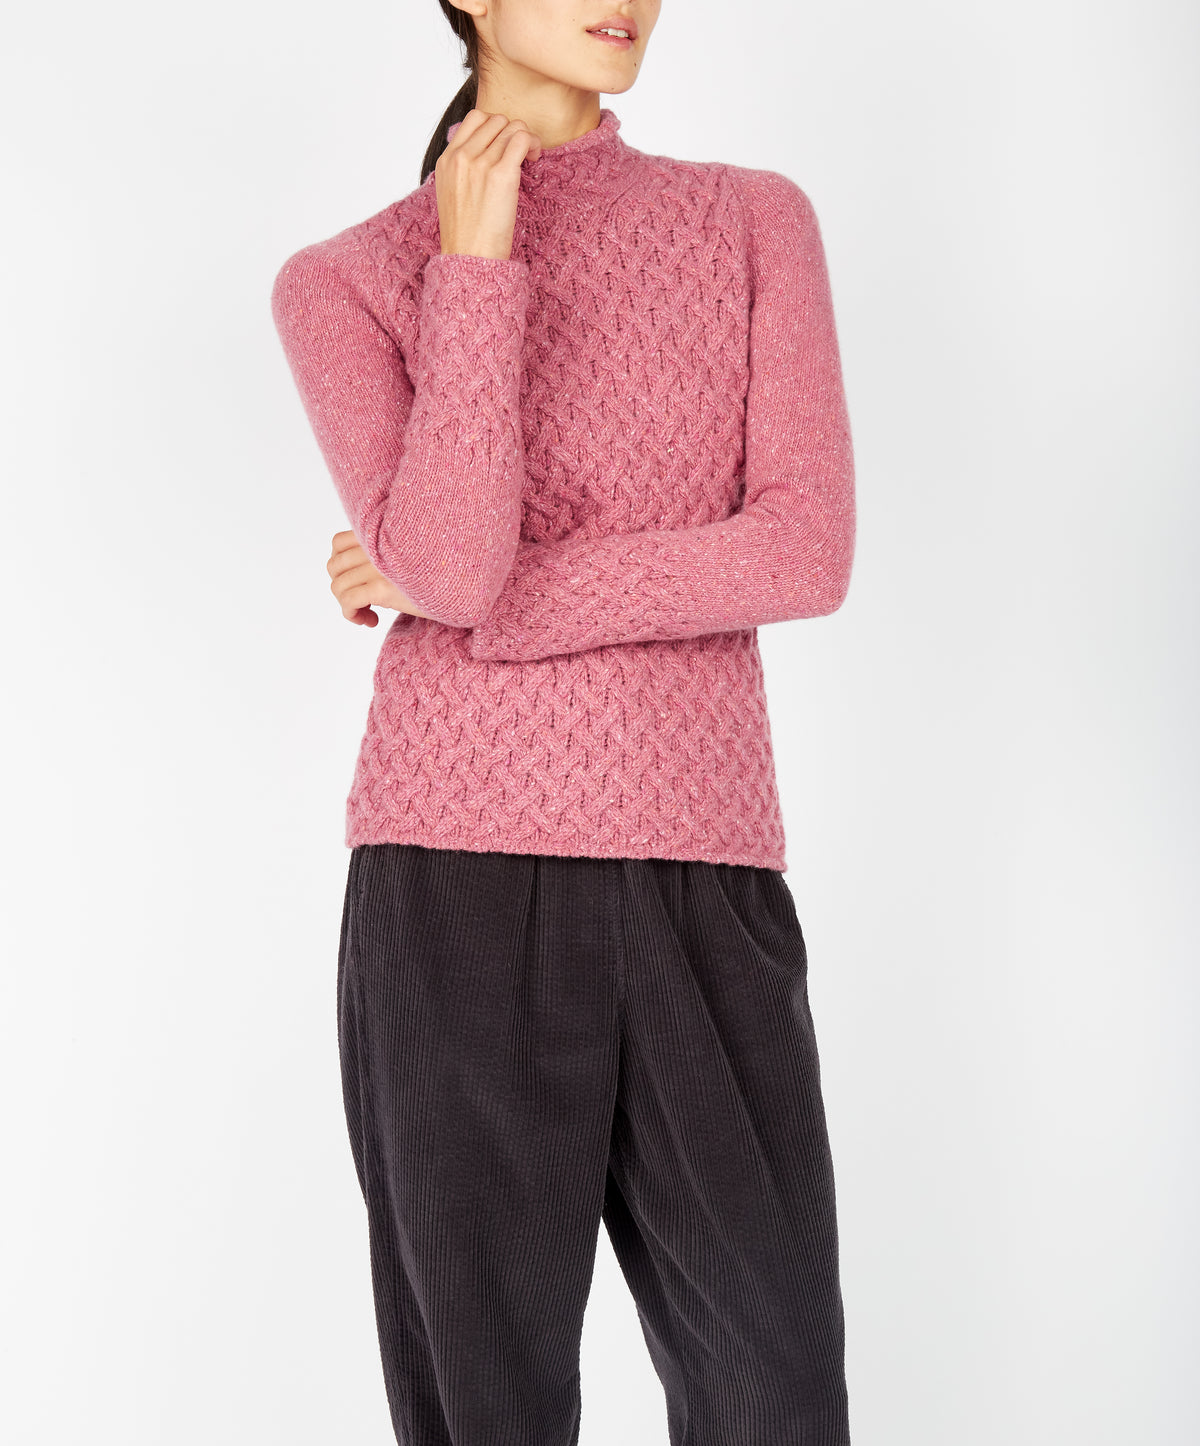 IrelandsEye Knitwear Trellis Sweater Bubblegum Pink